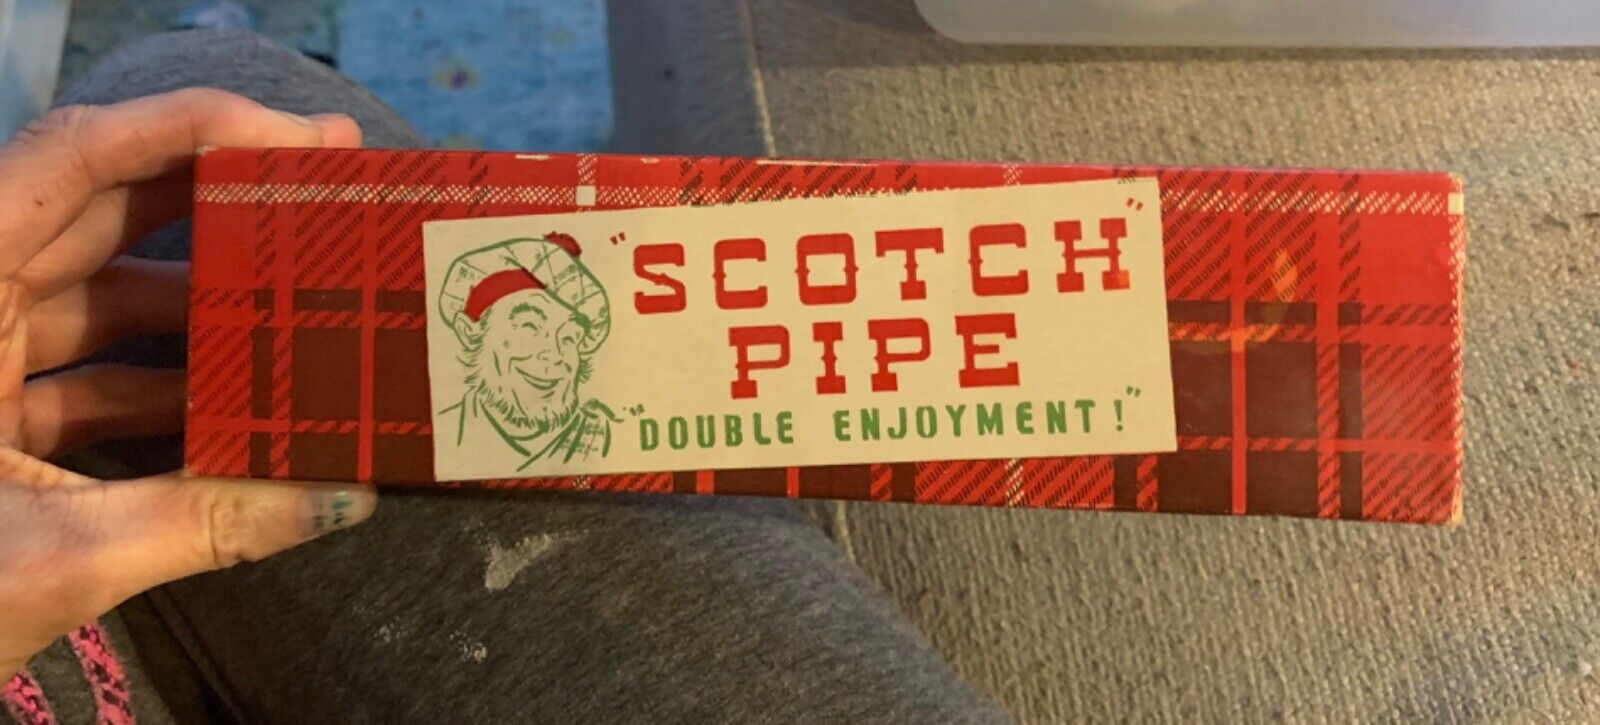 Vtg 1941 scotch pipe double enjoyment + box